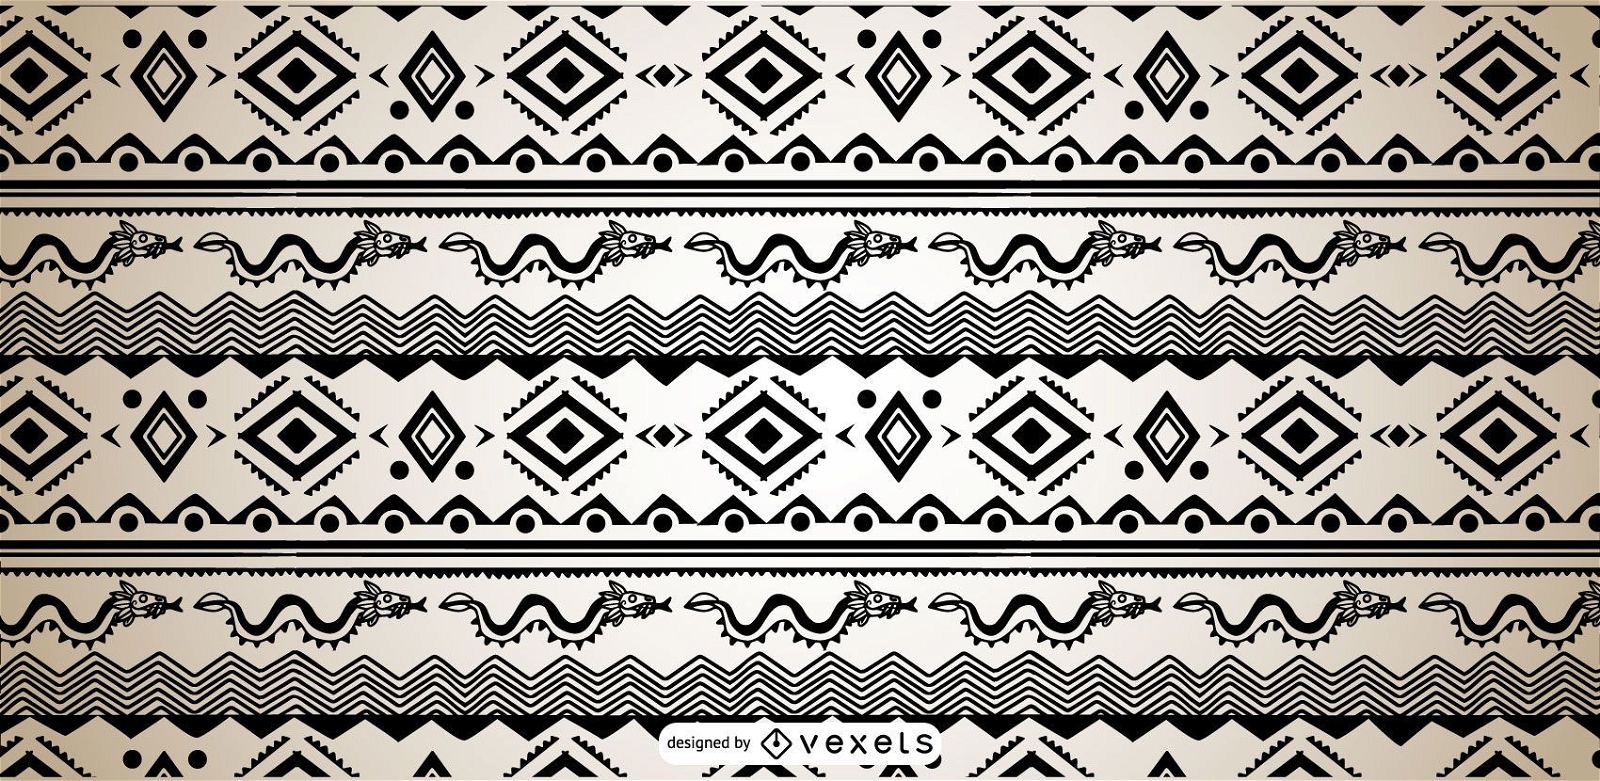 Aztekisches Muster-Schwarzweiss-Entwurf